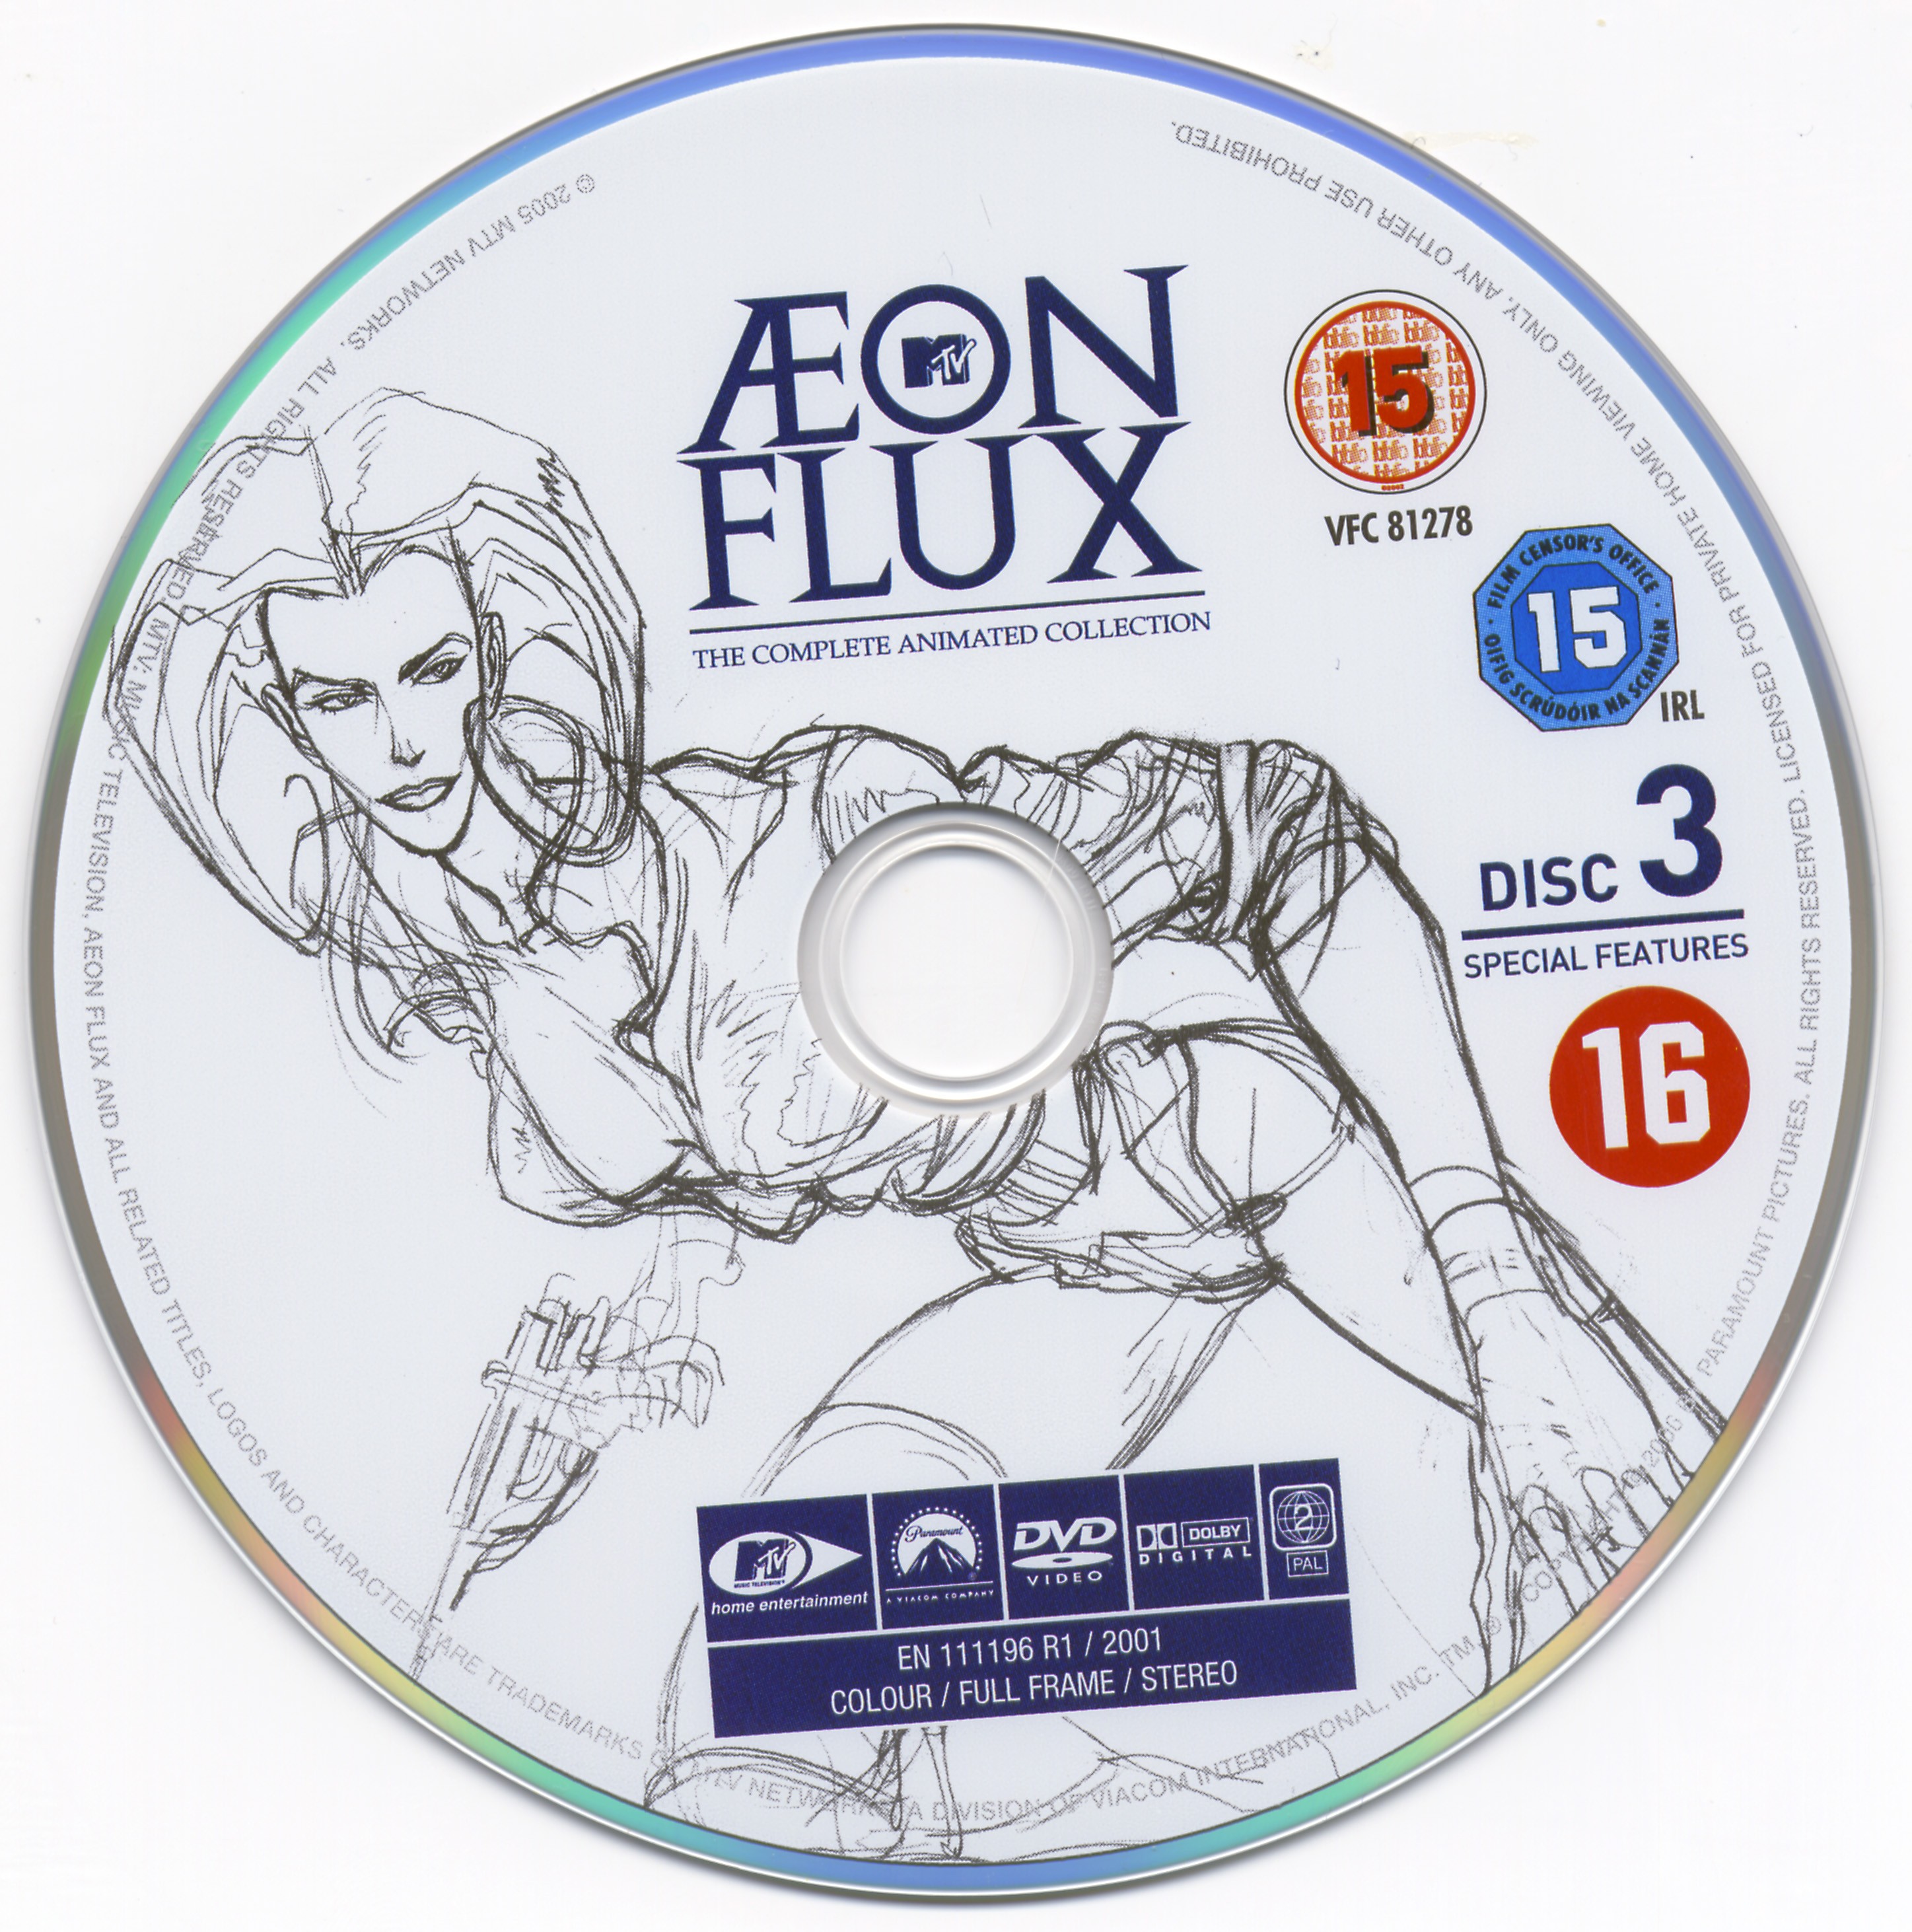 Aeon flux DVD 3